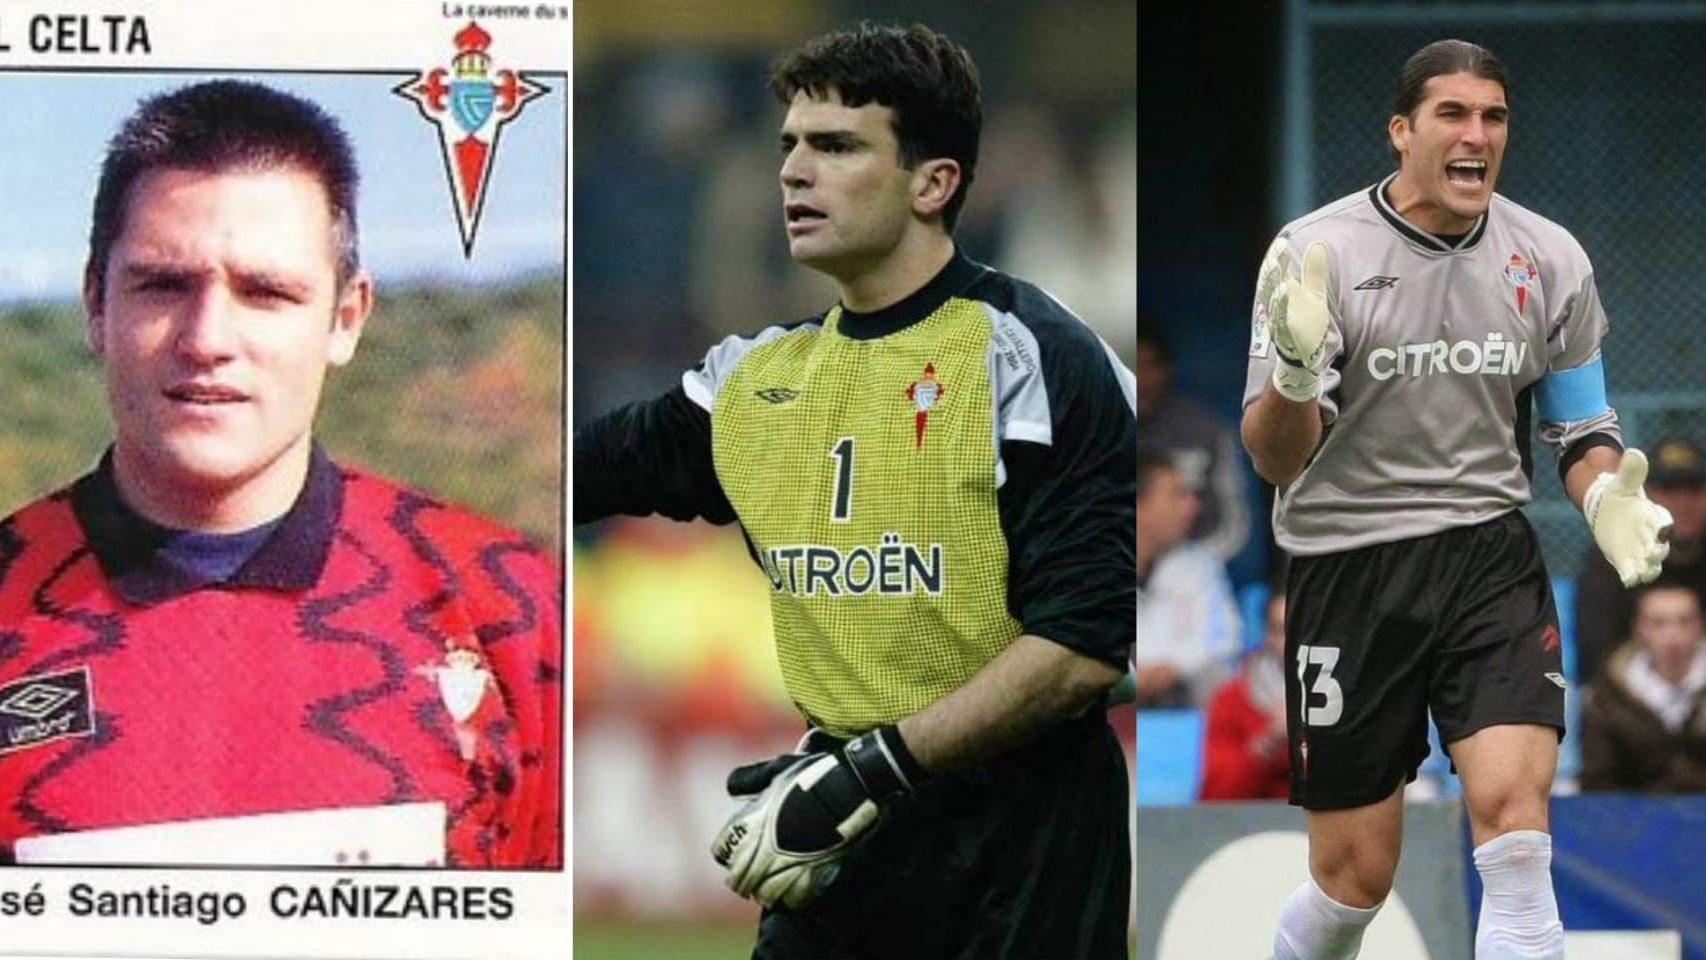 Cañizares, Cavallero y Pinto son los tres únicos Zamora del Celta